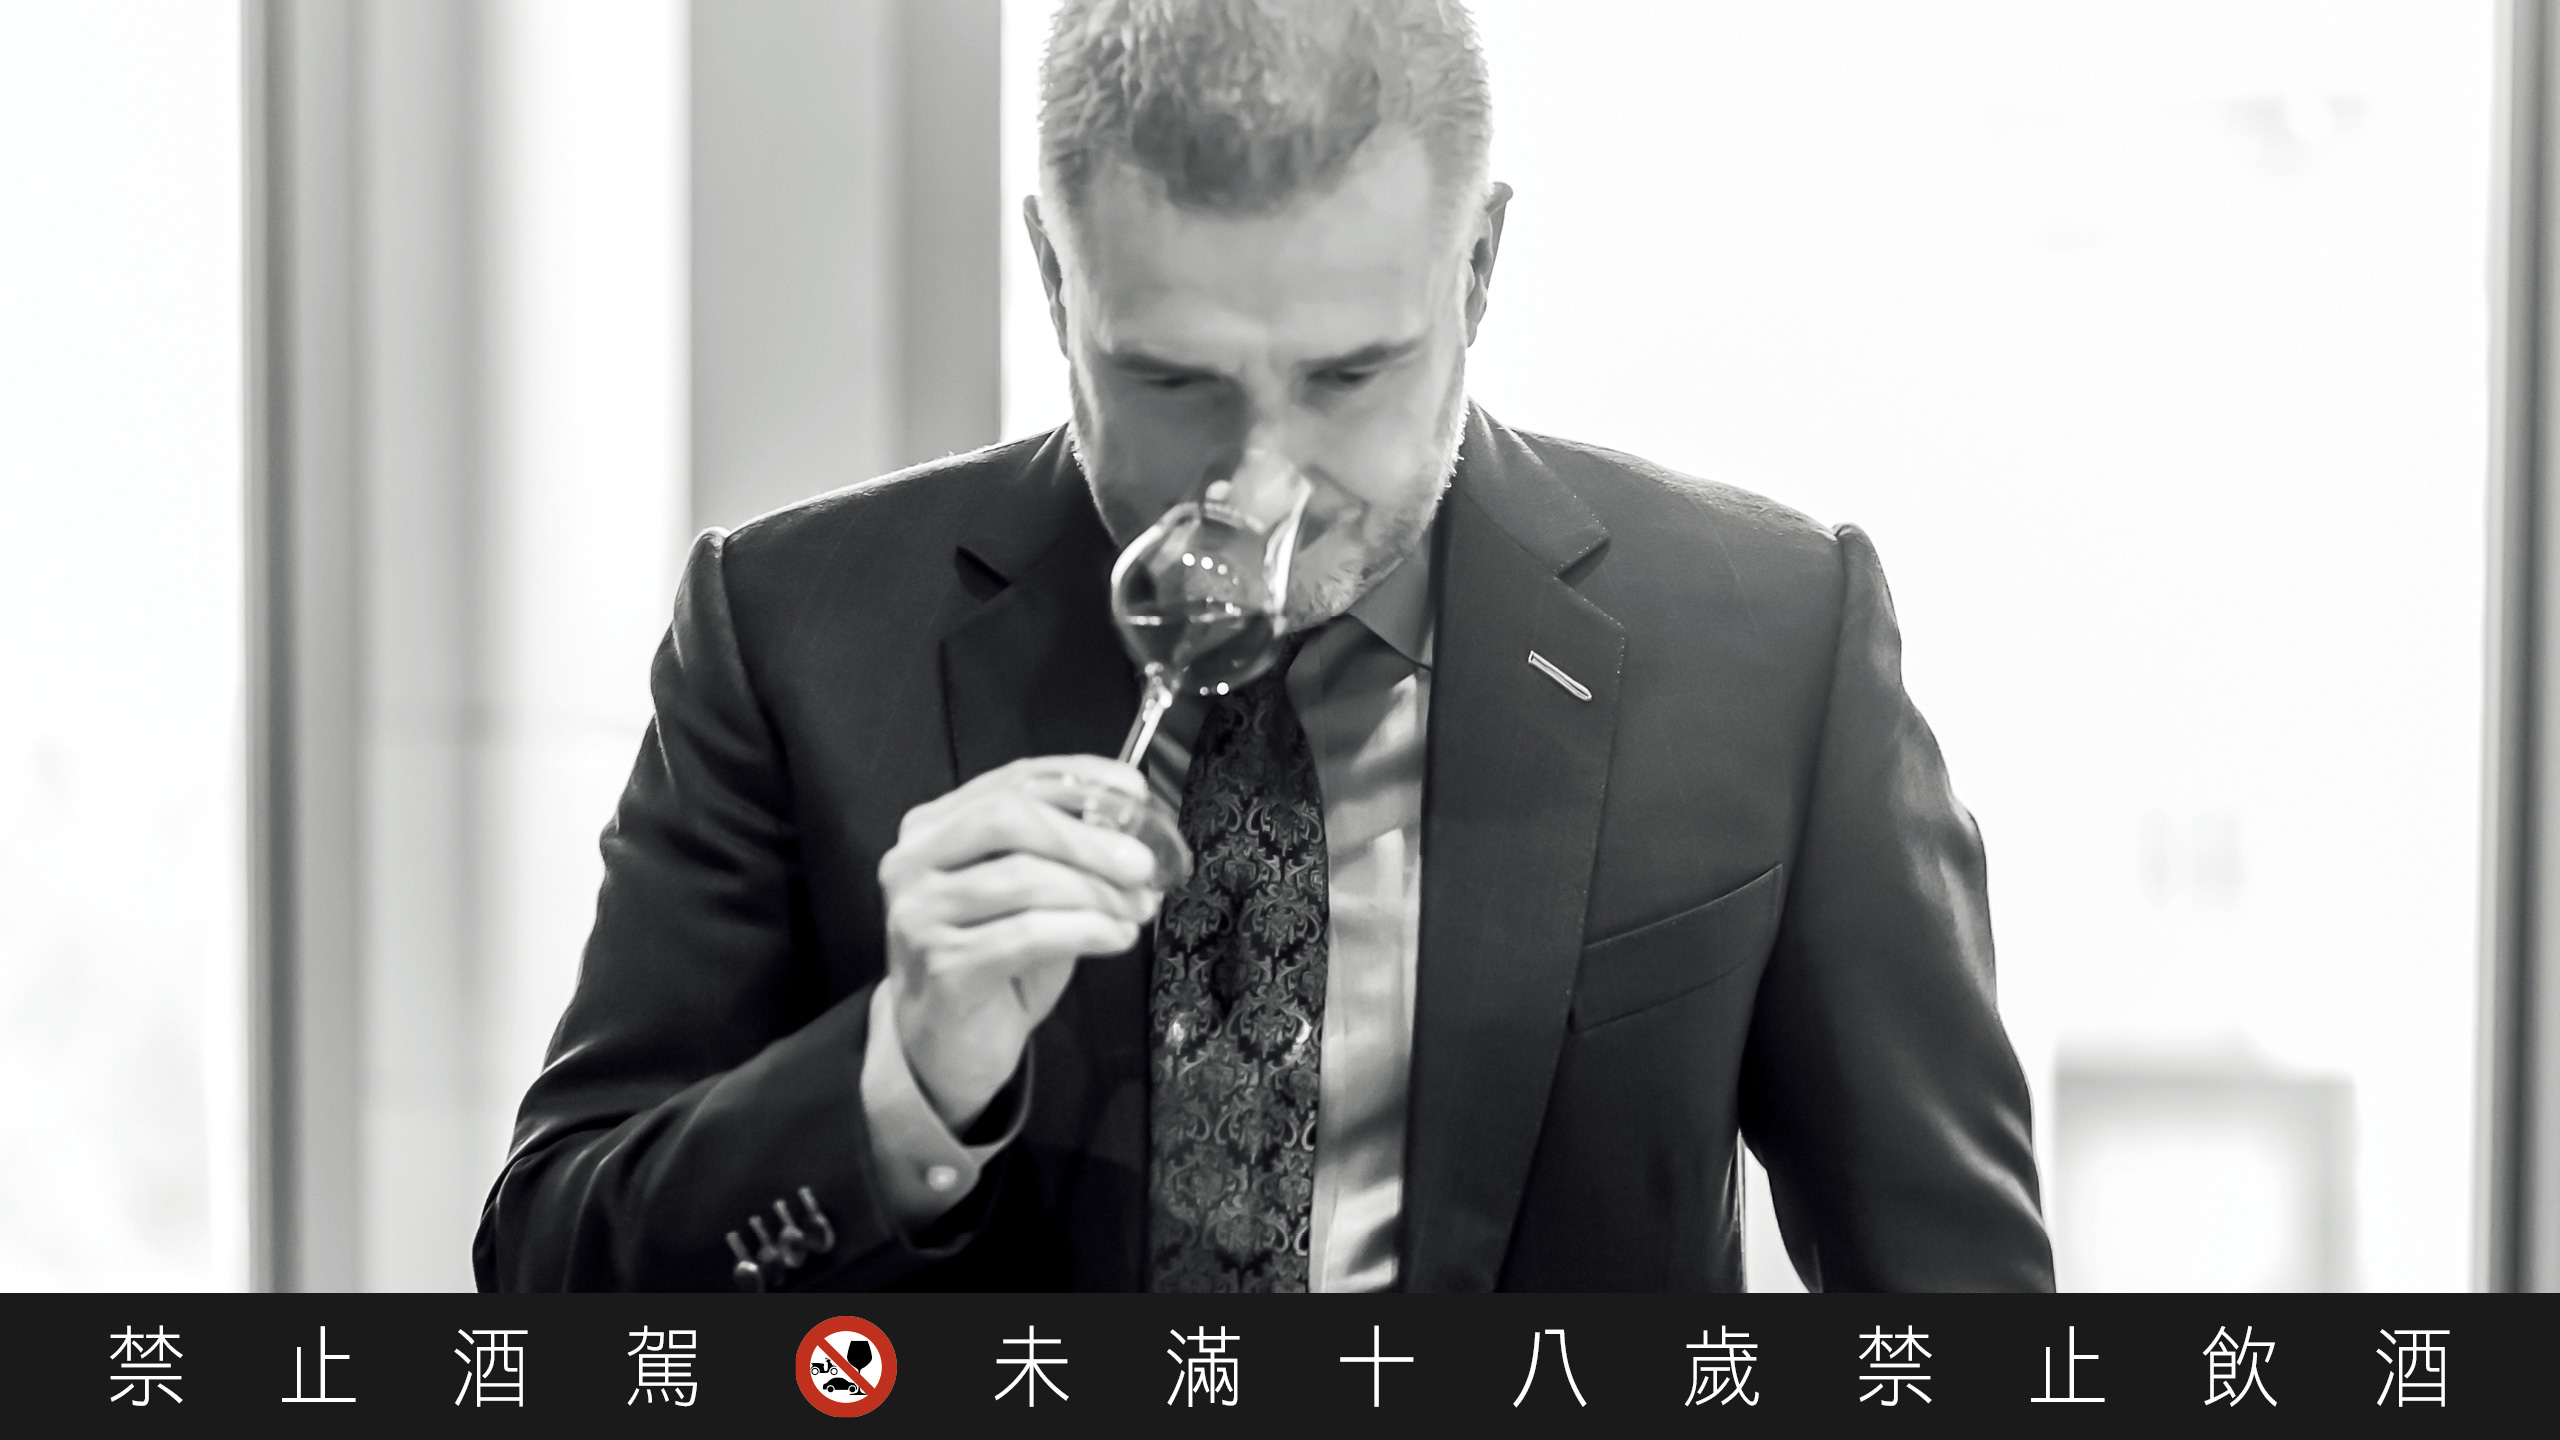 皇家礼炮首席调酒师 Sandy Hyslop 将酒液融入台湾茶元素。